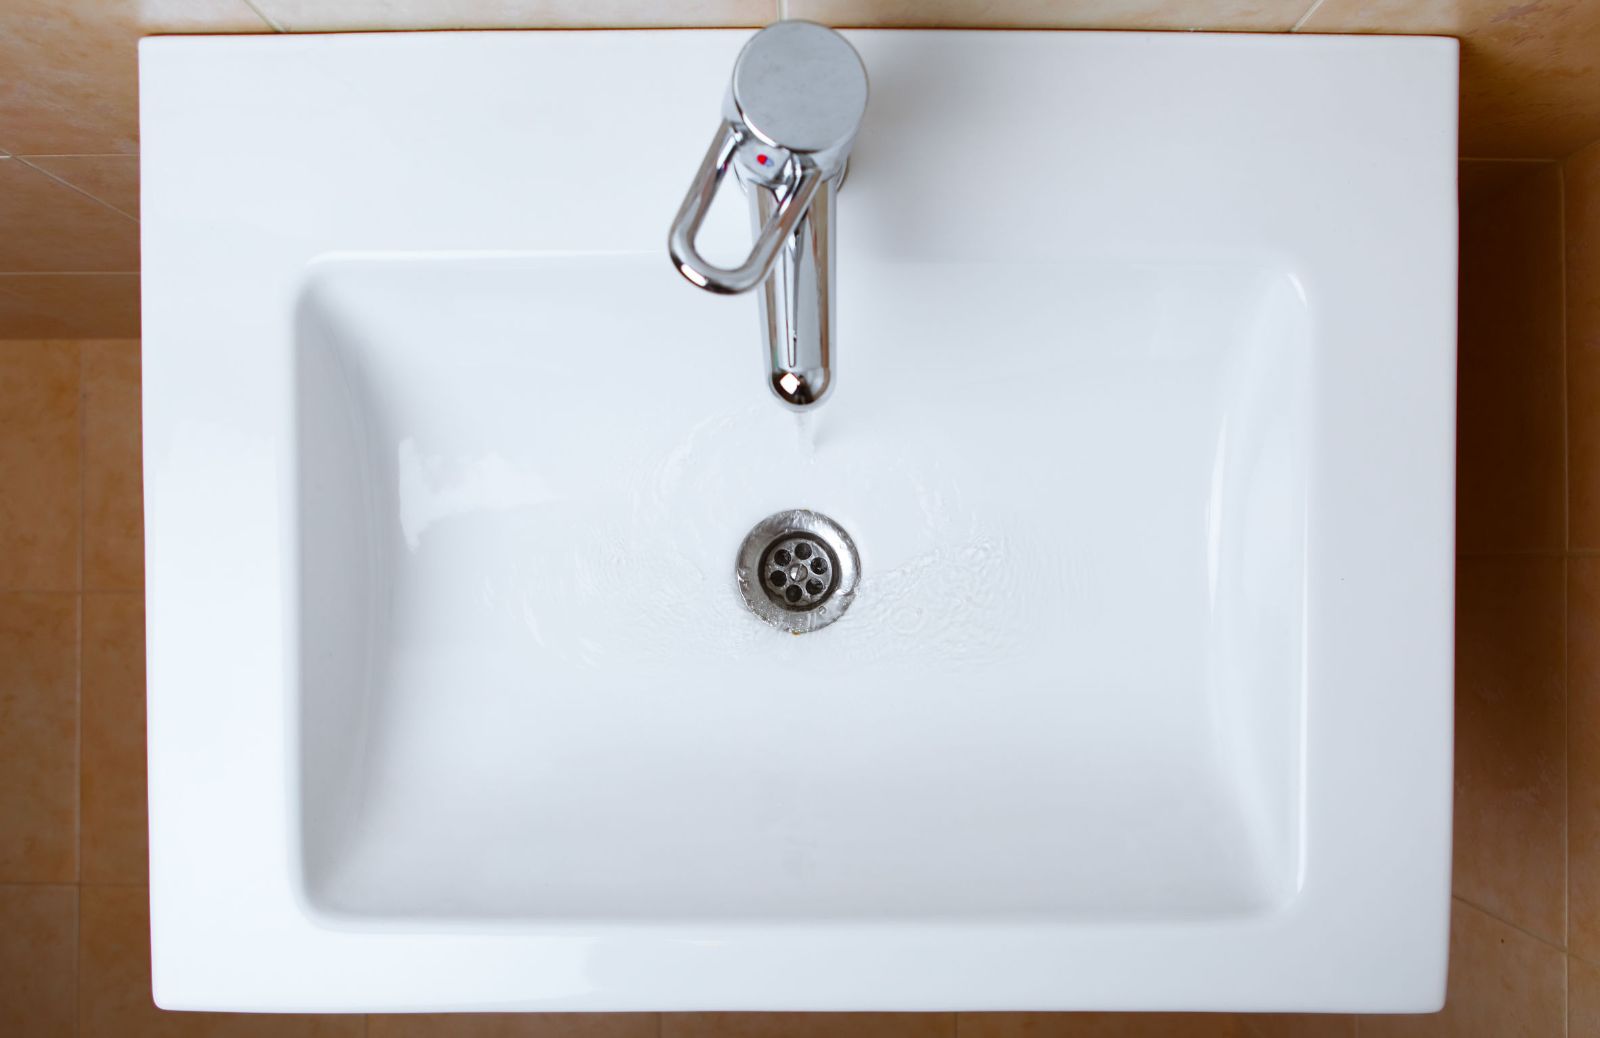 Lavabo da appoggio vs lavabo sospeso: tre vantaggi di ogni modello